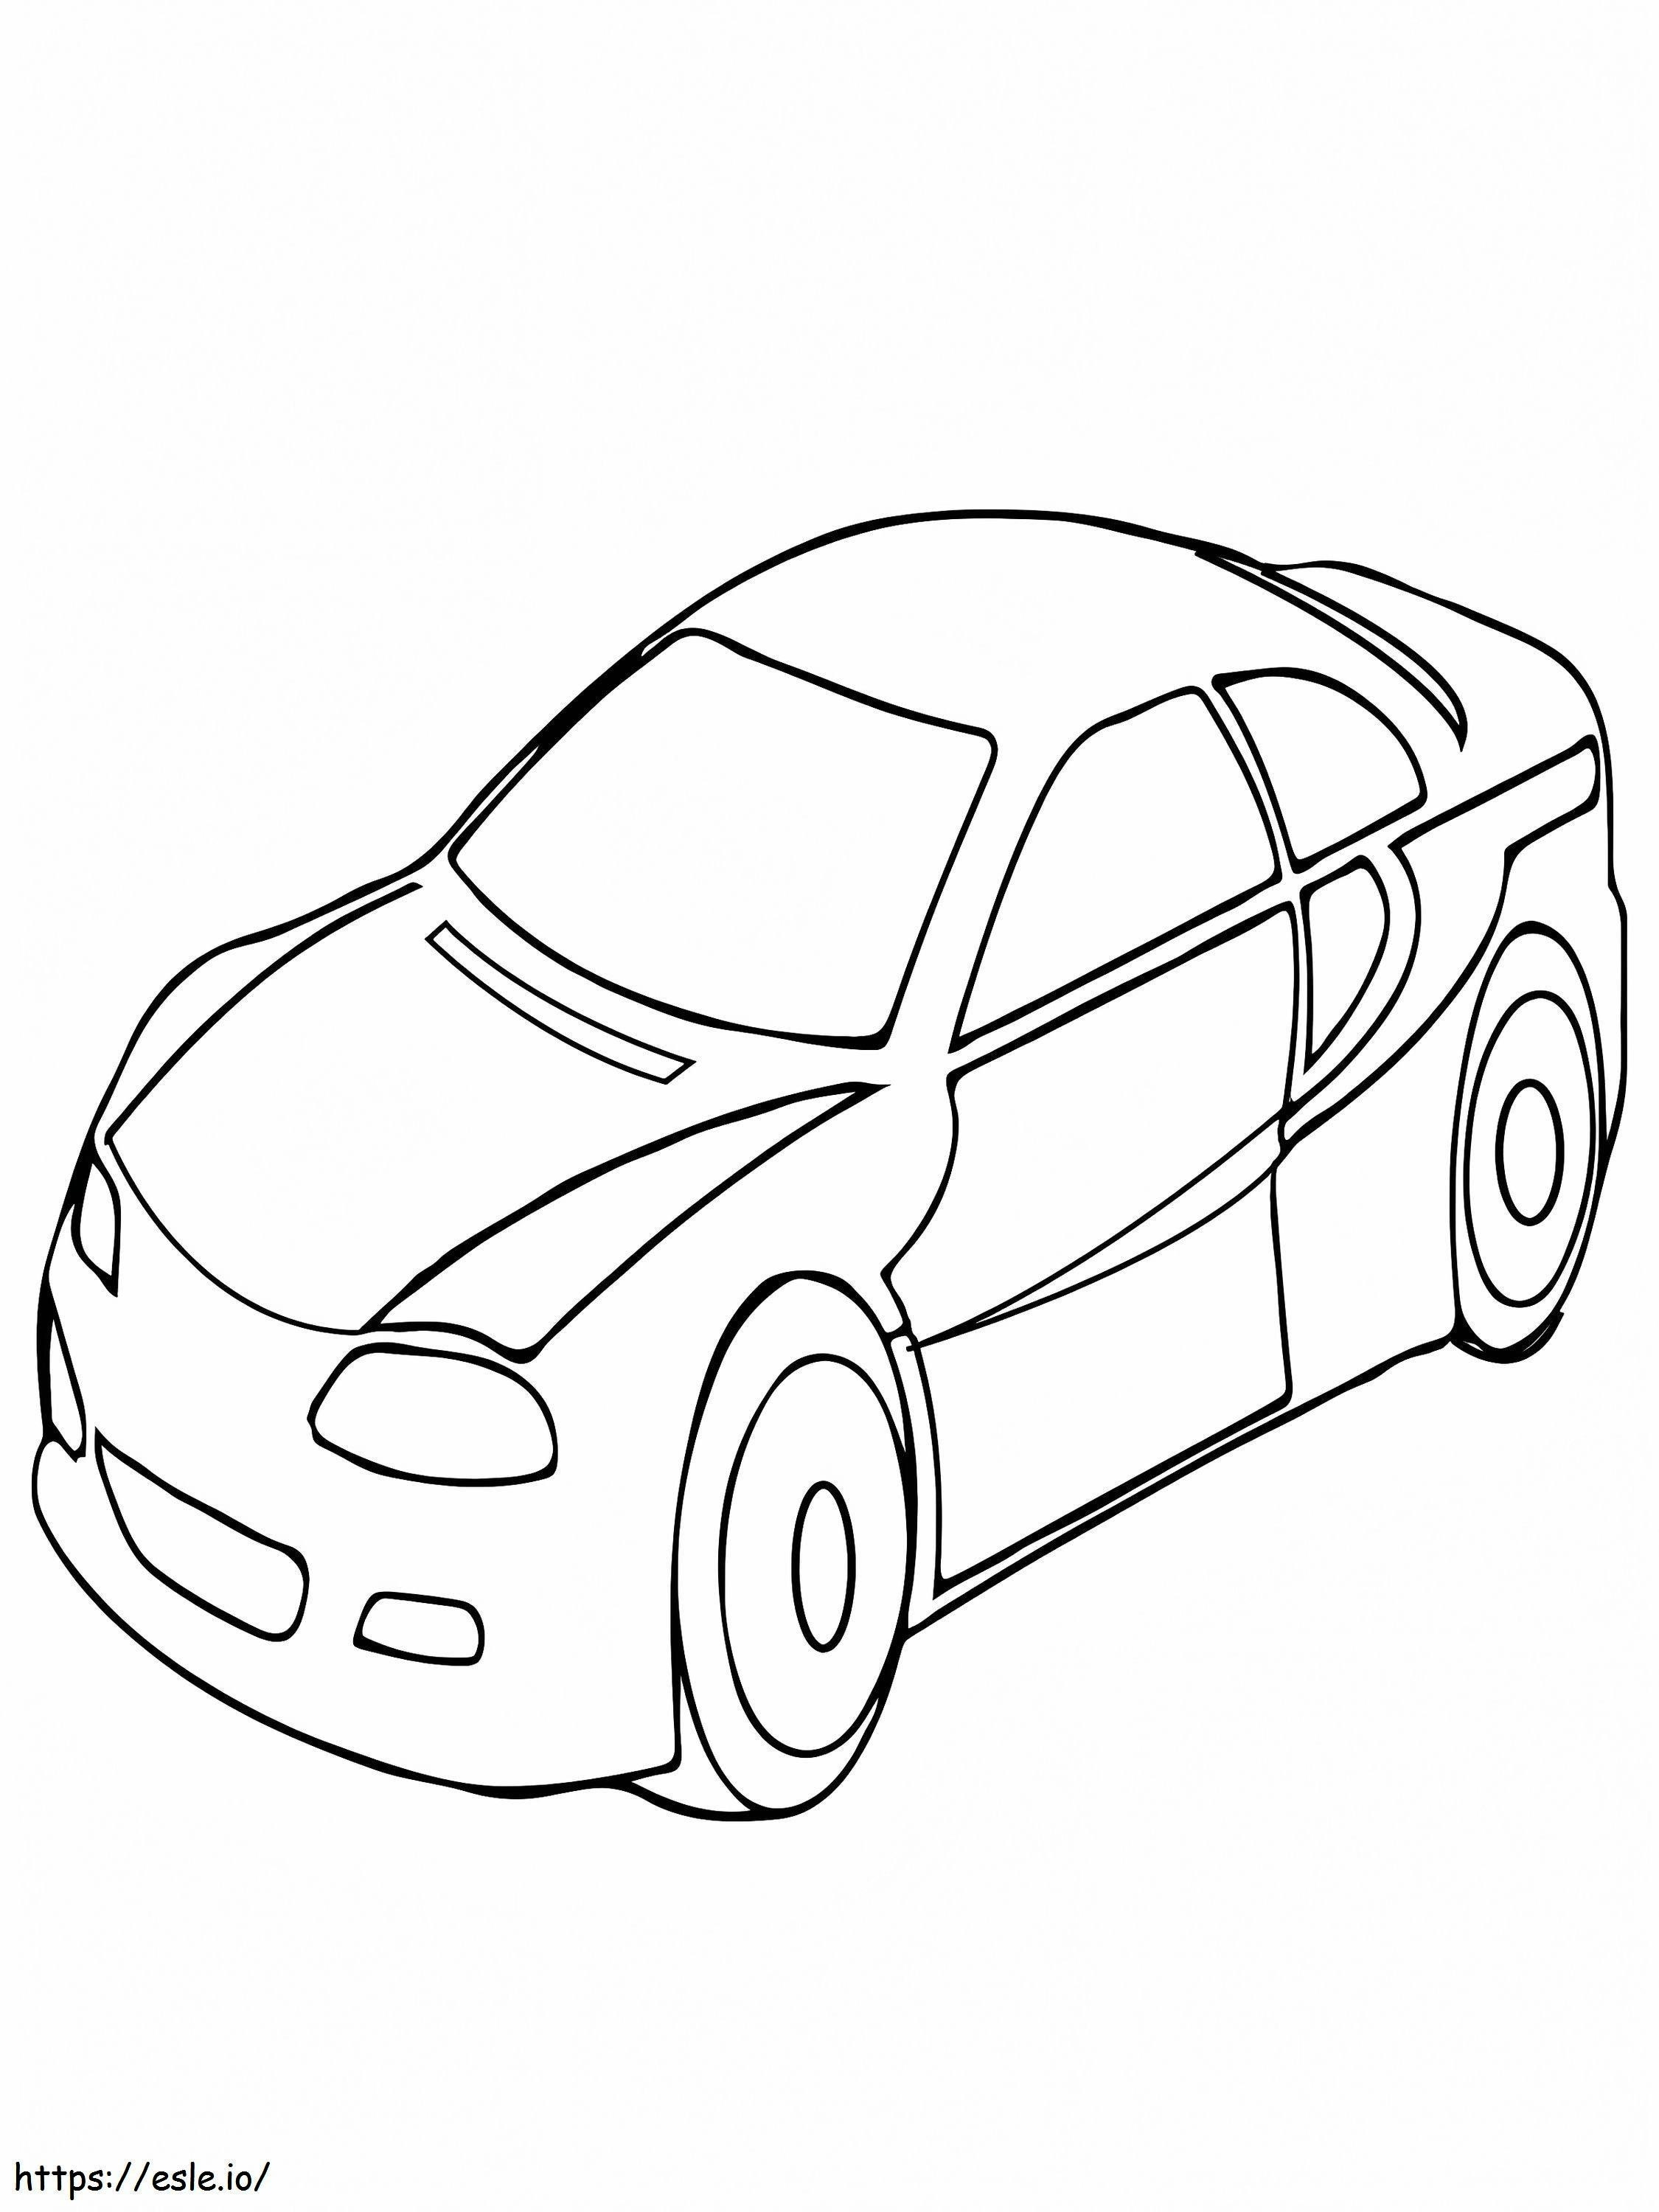 Desain Mobil Coupe Gambar Mewarnai